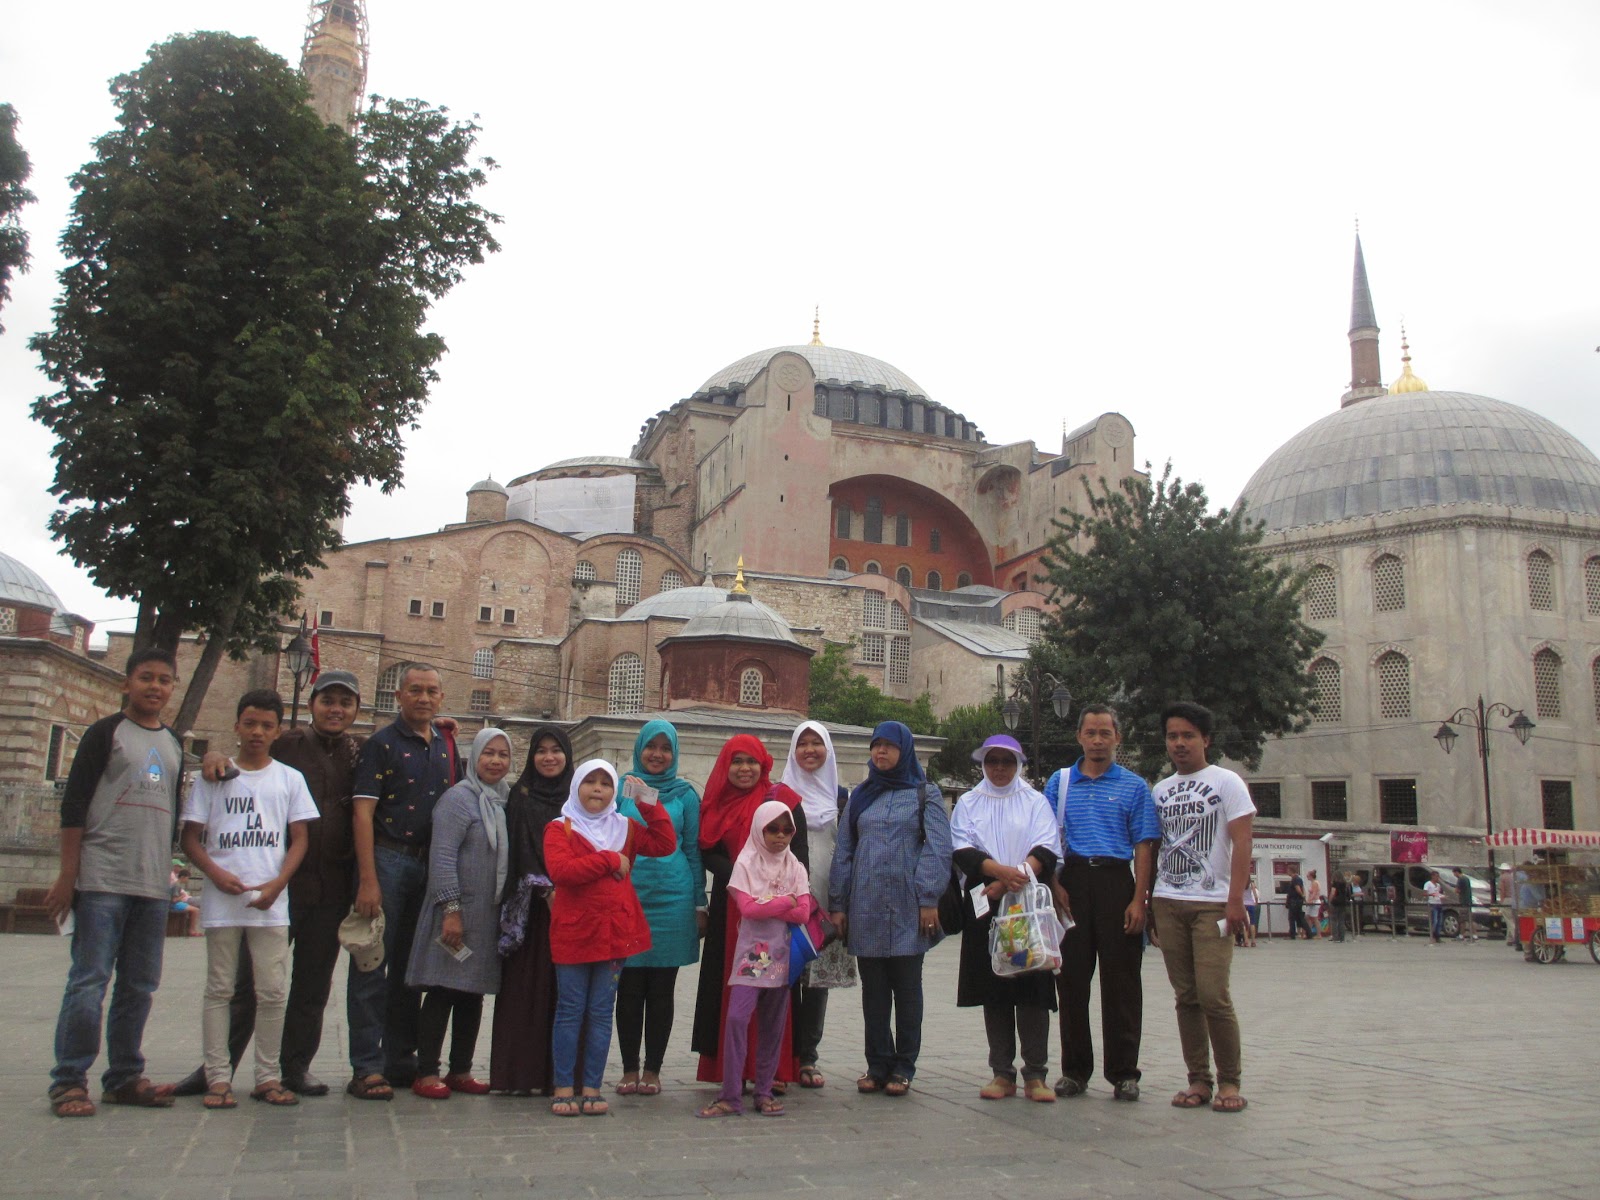 Tempat Wisata Negara Turki yang Biasa di Kunjungi